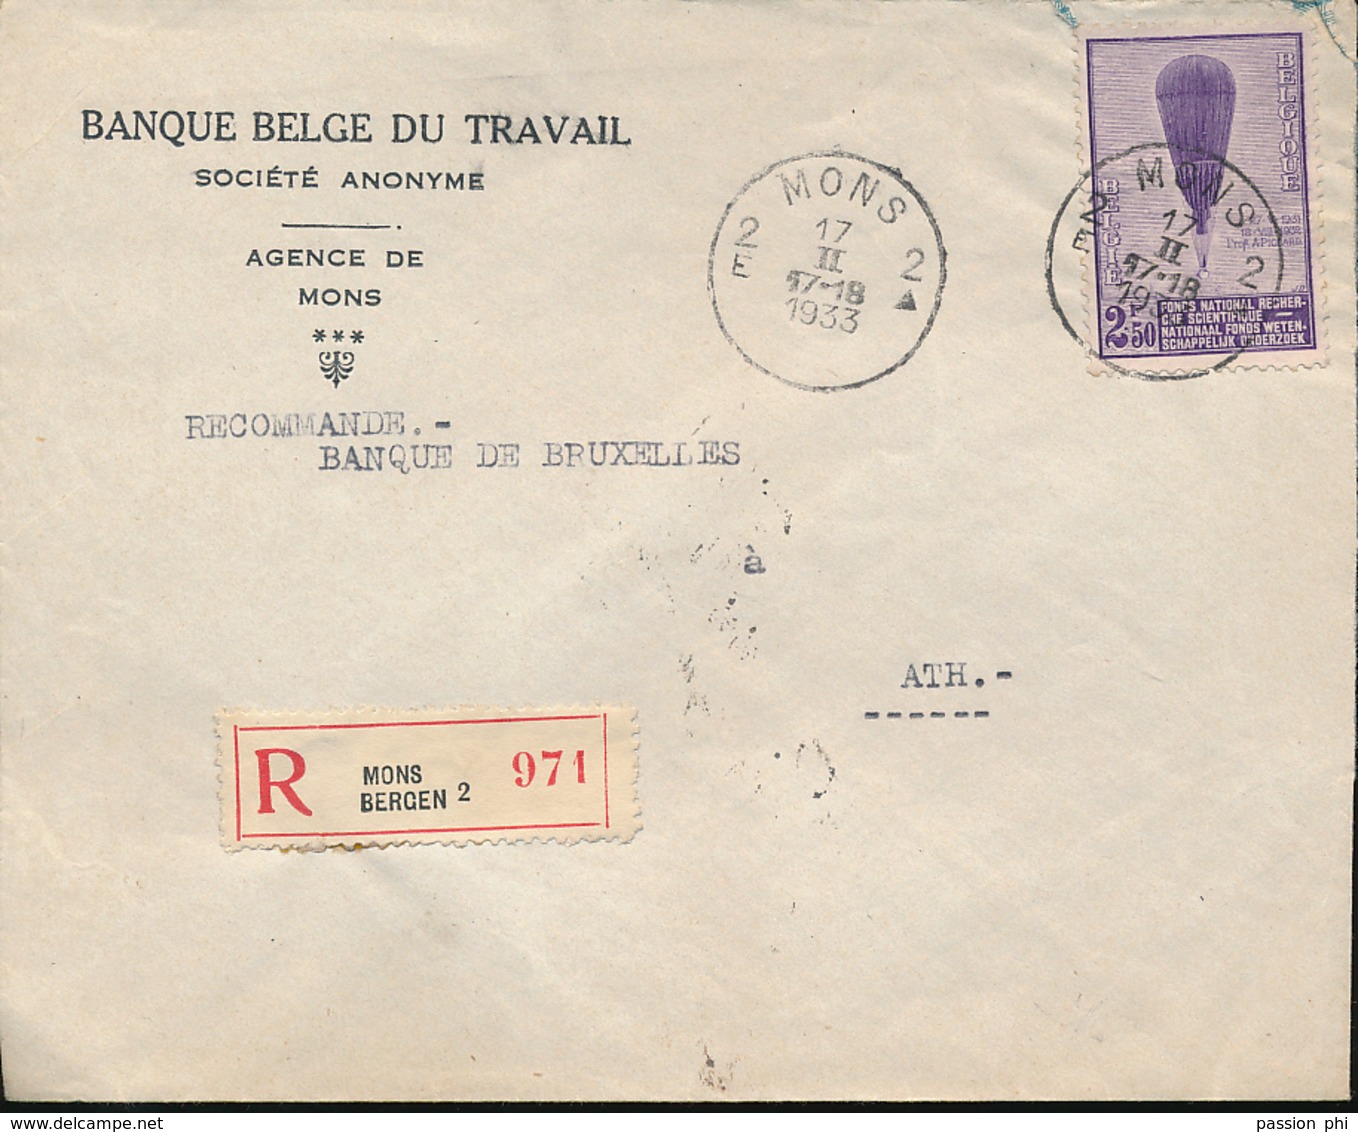 BELGIQUE EMISSION DE 1932 LE BALLON PICCARD DISPERSION D'UN BEL ENSEMBLE BANQUE BELGE DU TRAVAIL MONS 1933 - Lettres & Documents